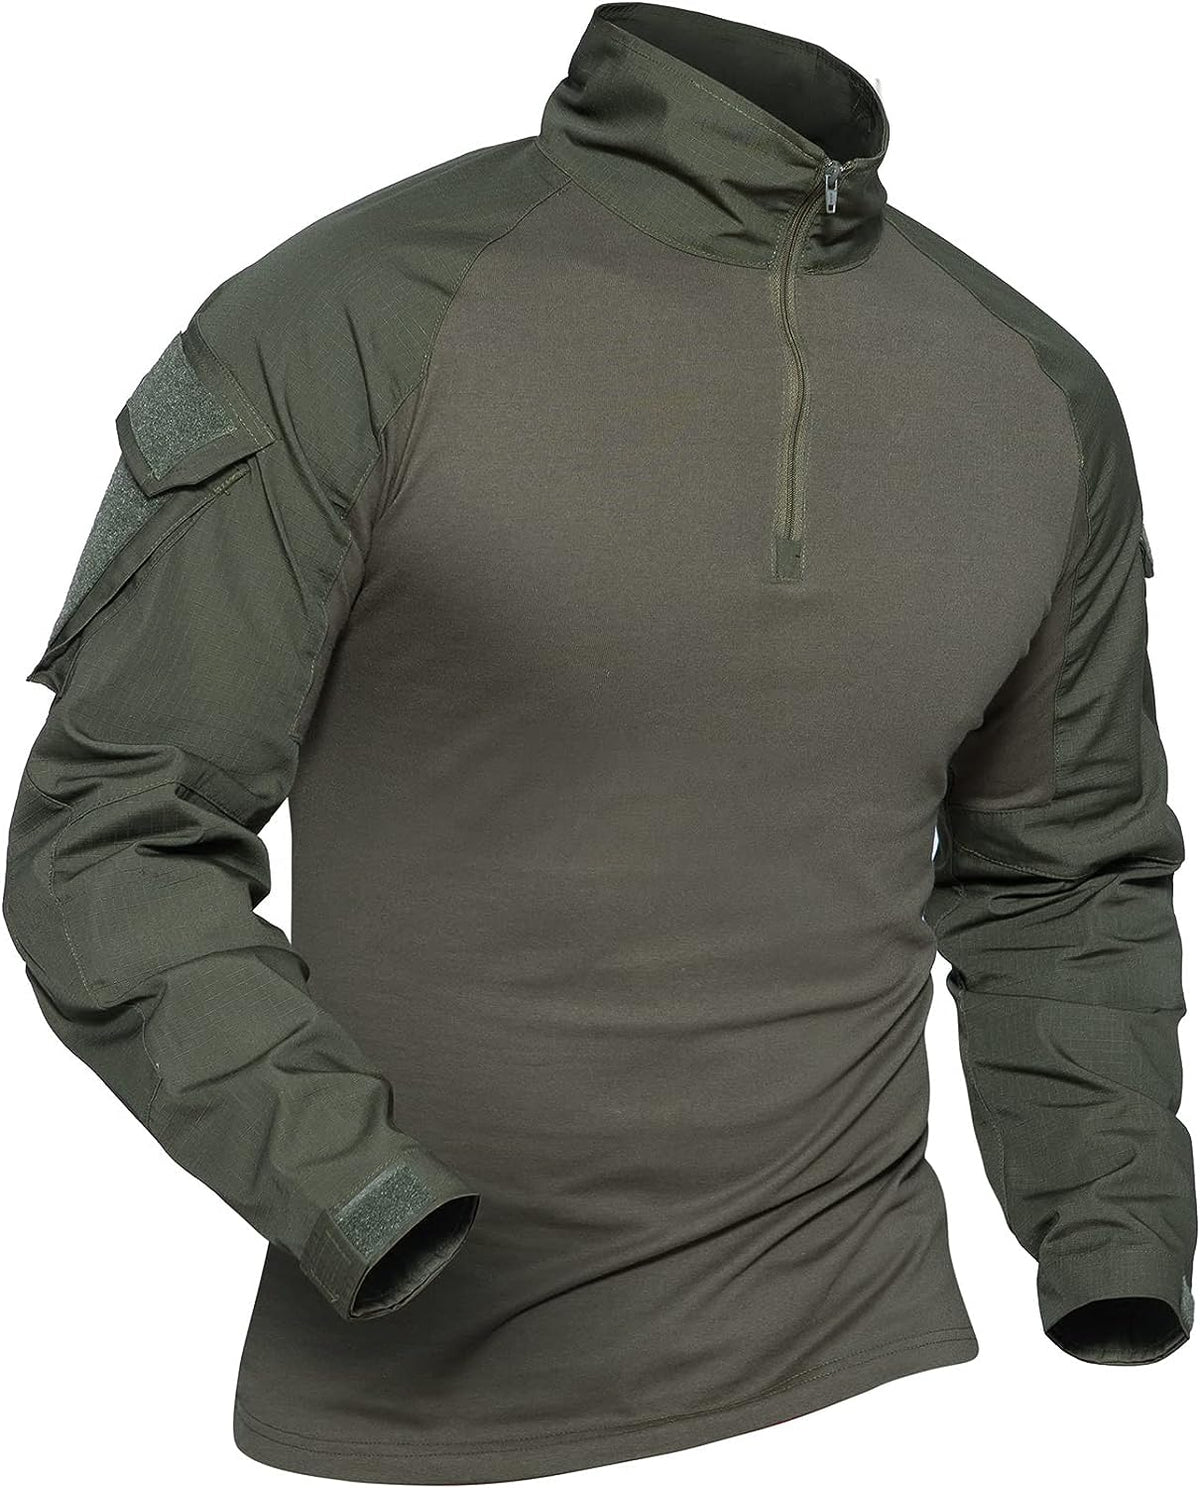 Combat Tactical Shirt for Men #Color_Green - 2 Pockets